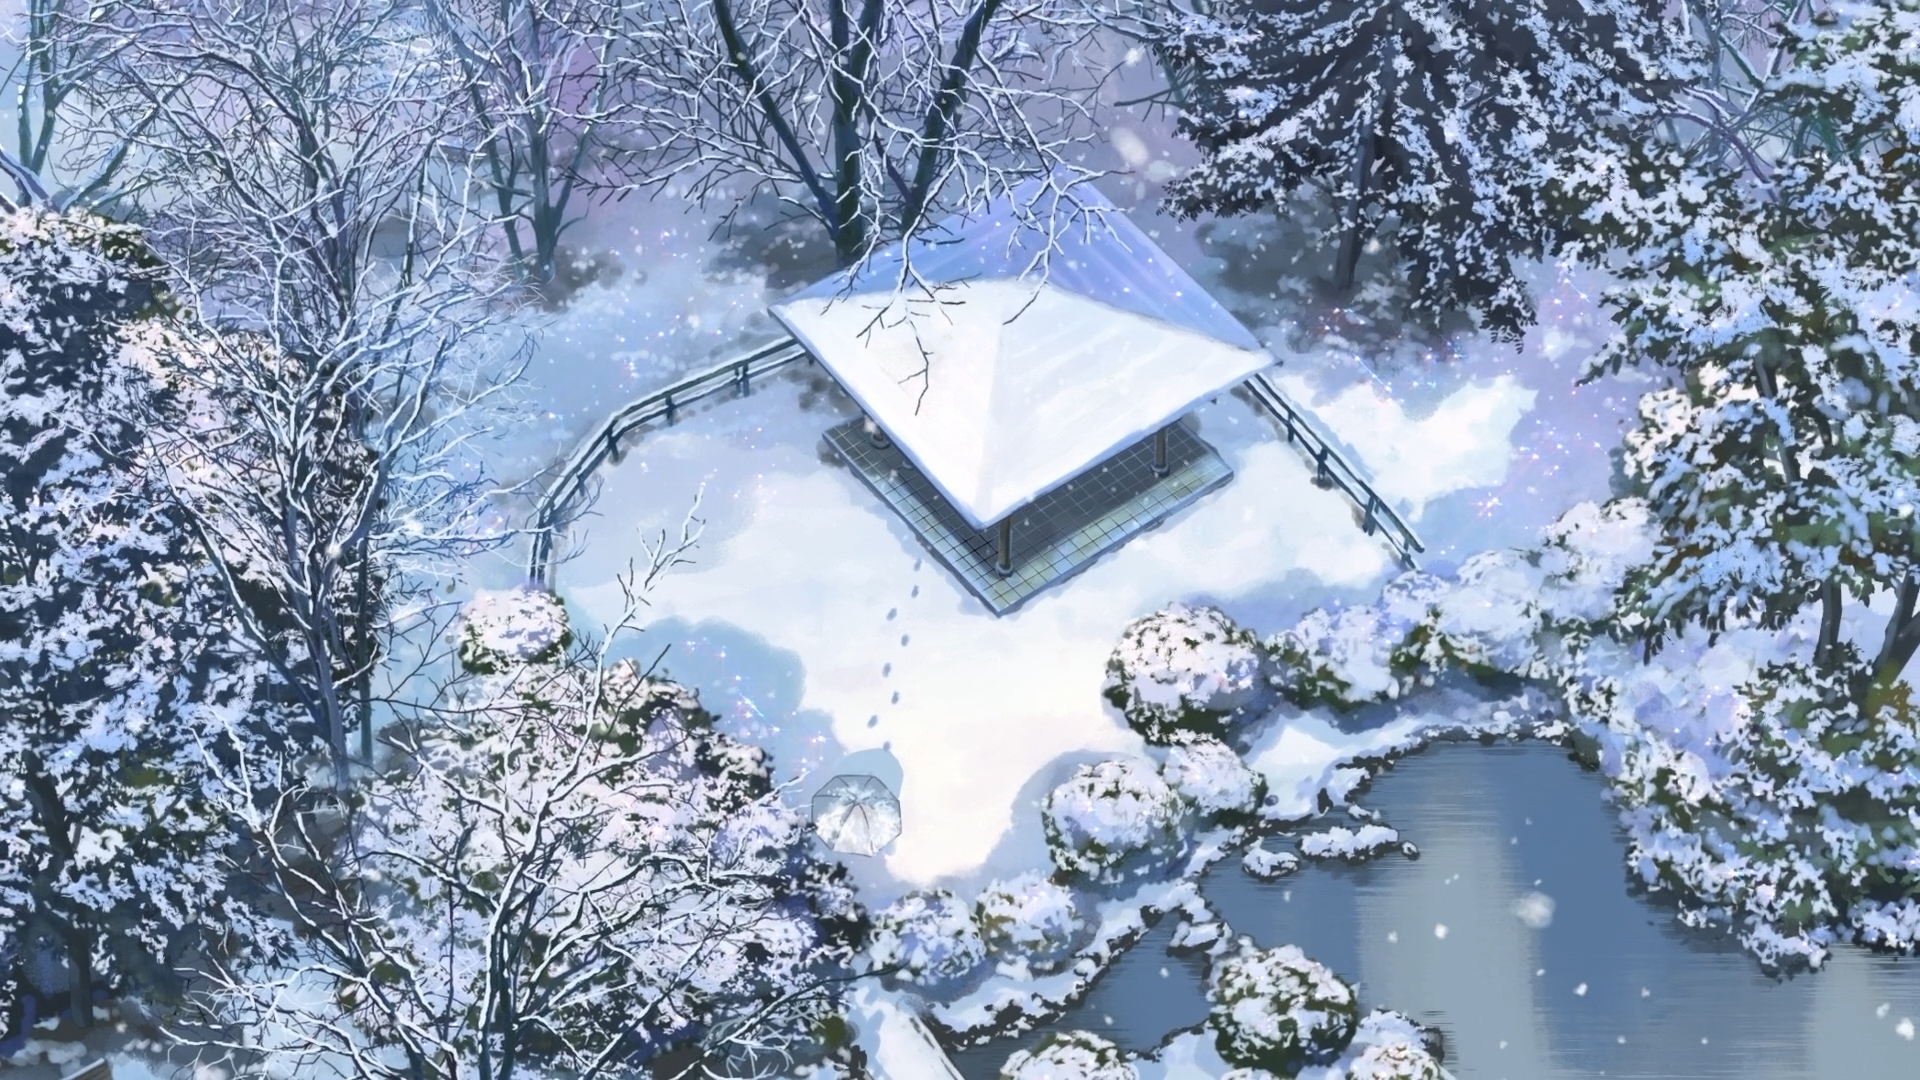 The Garden Of Words Makoto Shinkai Snow Anime 1920x1080